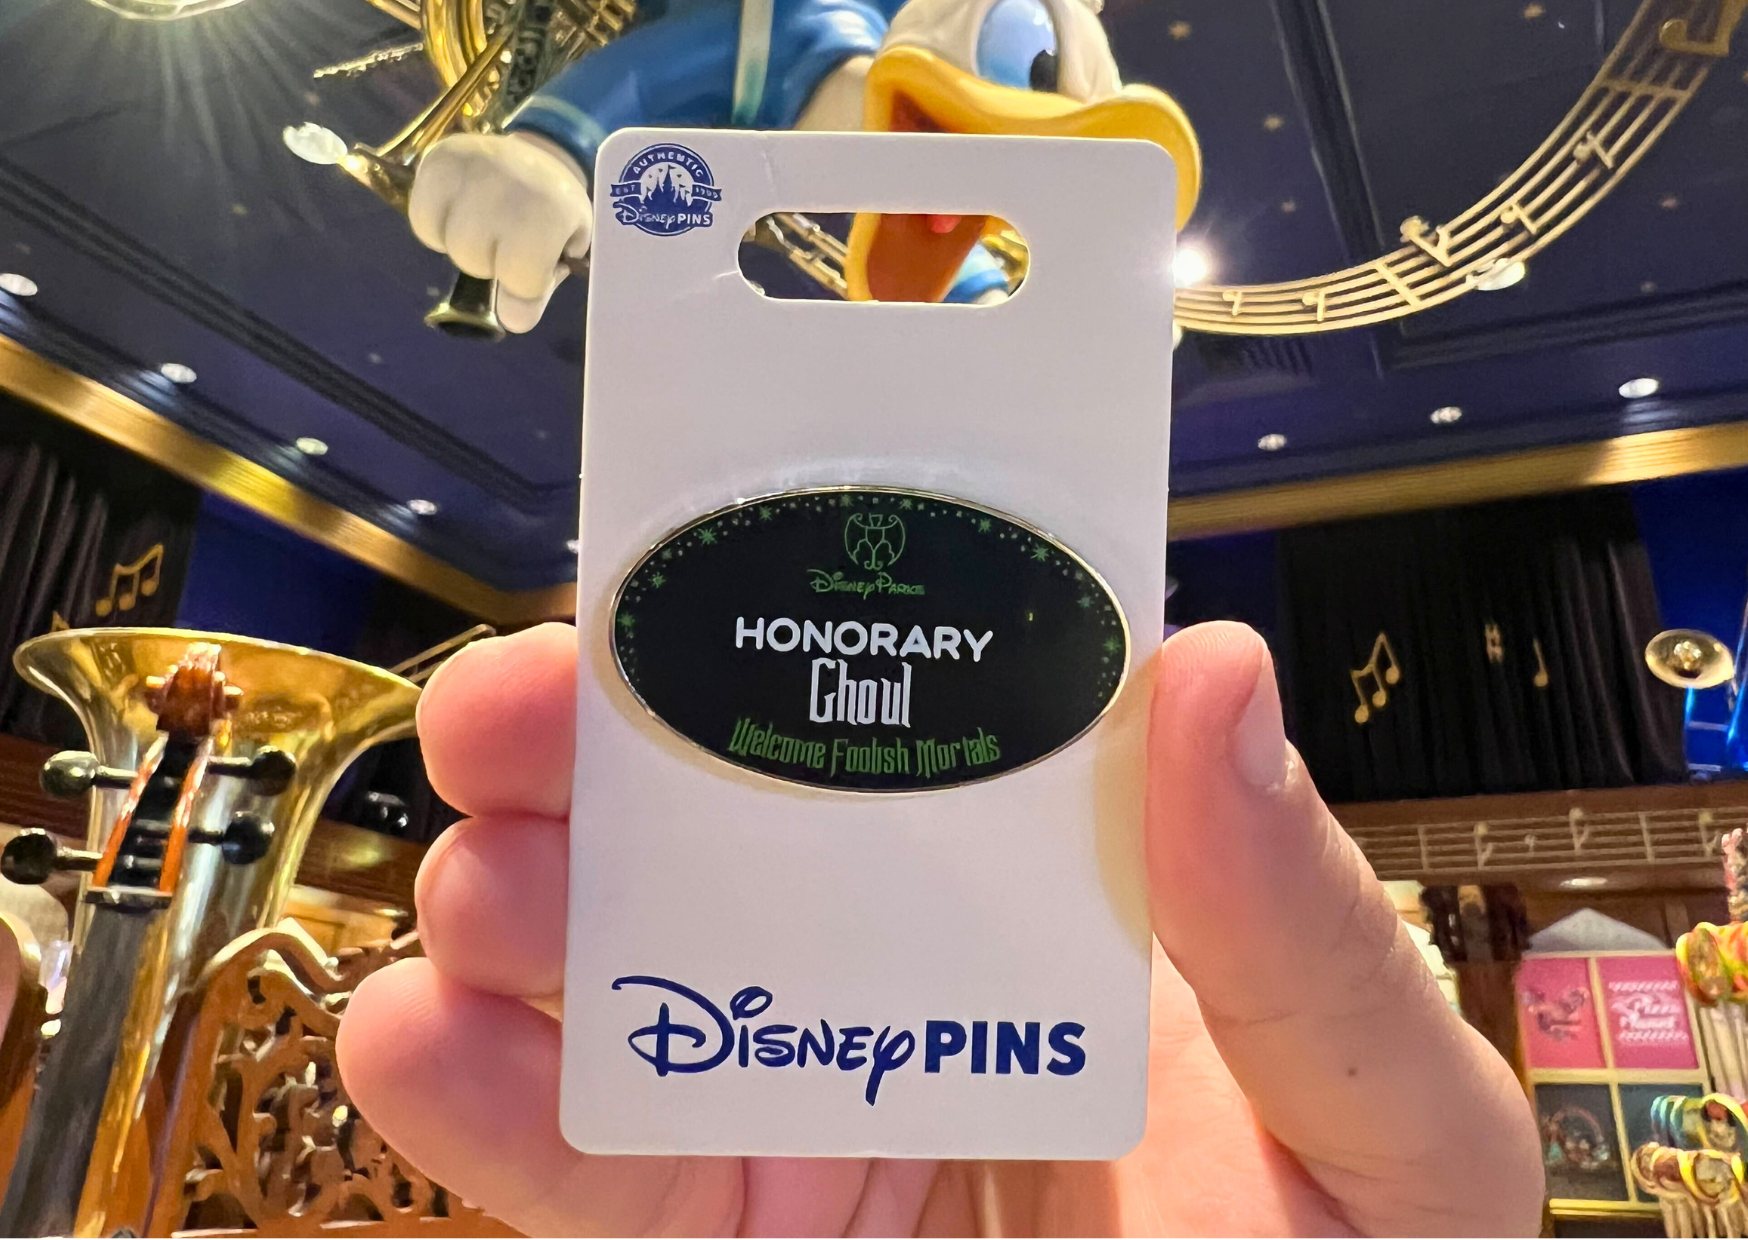 Honorary Ghoul Pin